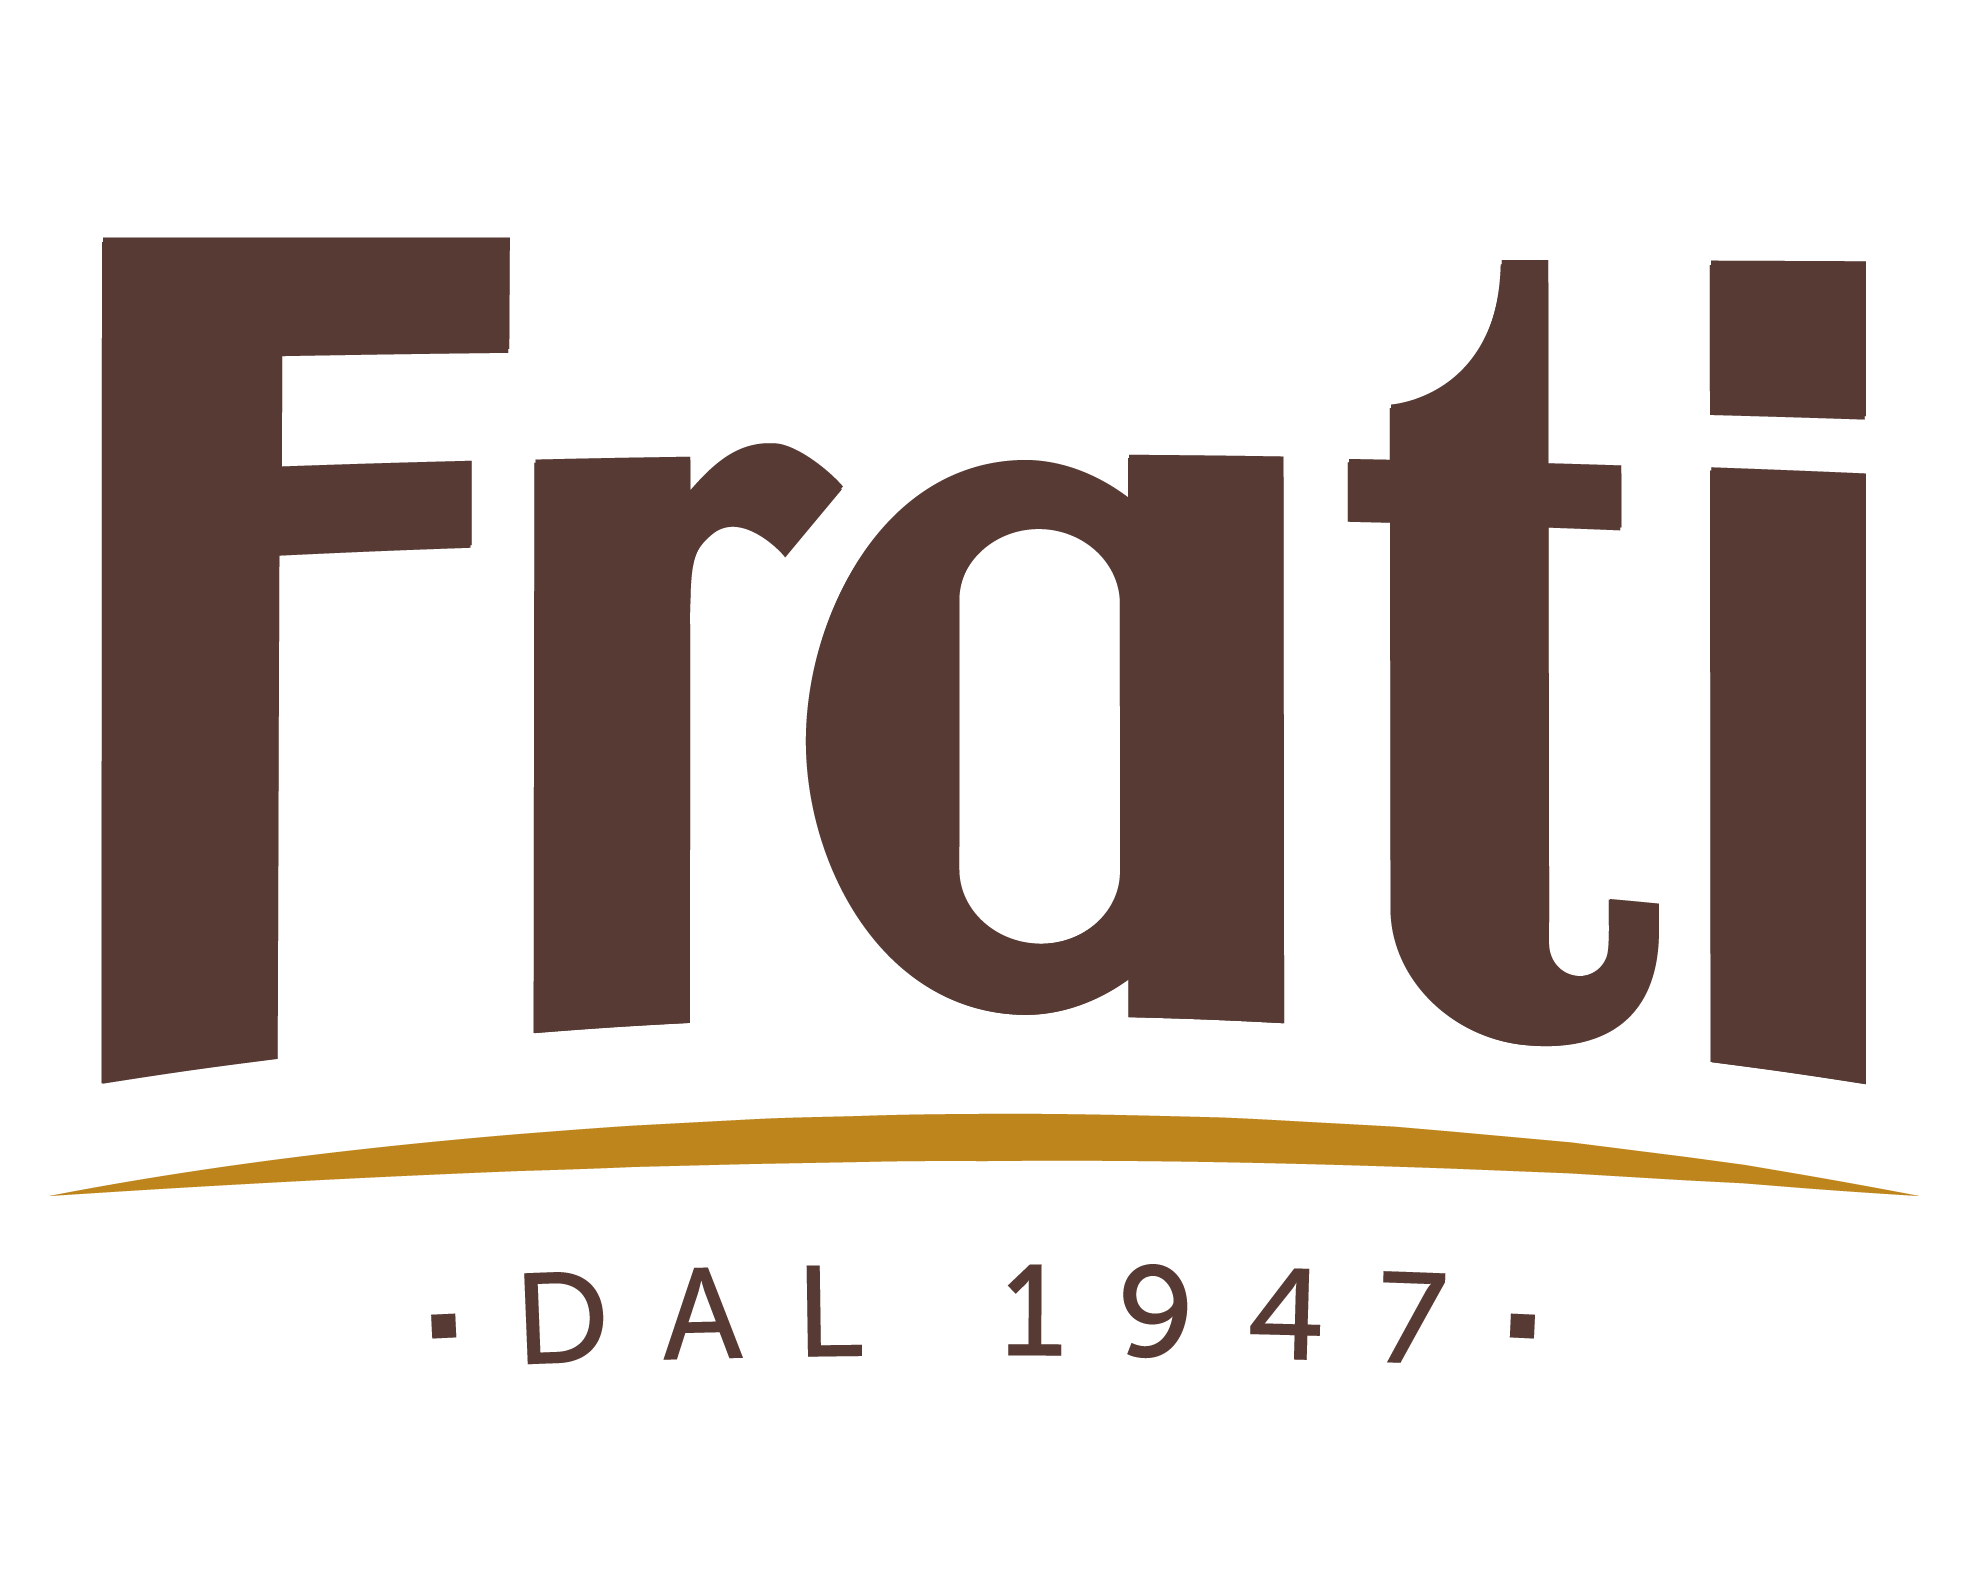 Panificio Frati - A Parma dal 1947